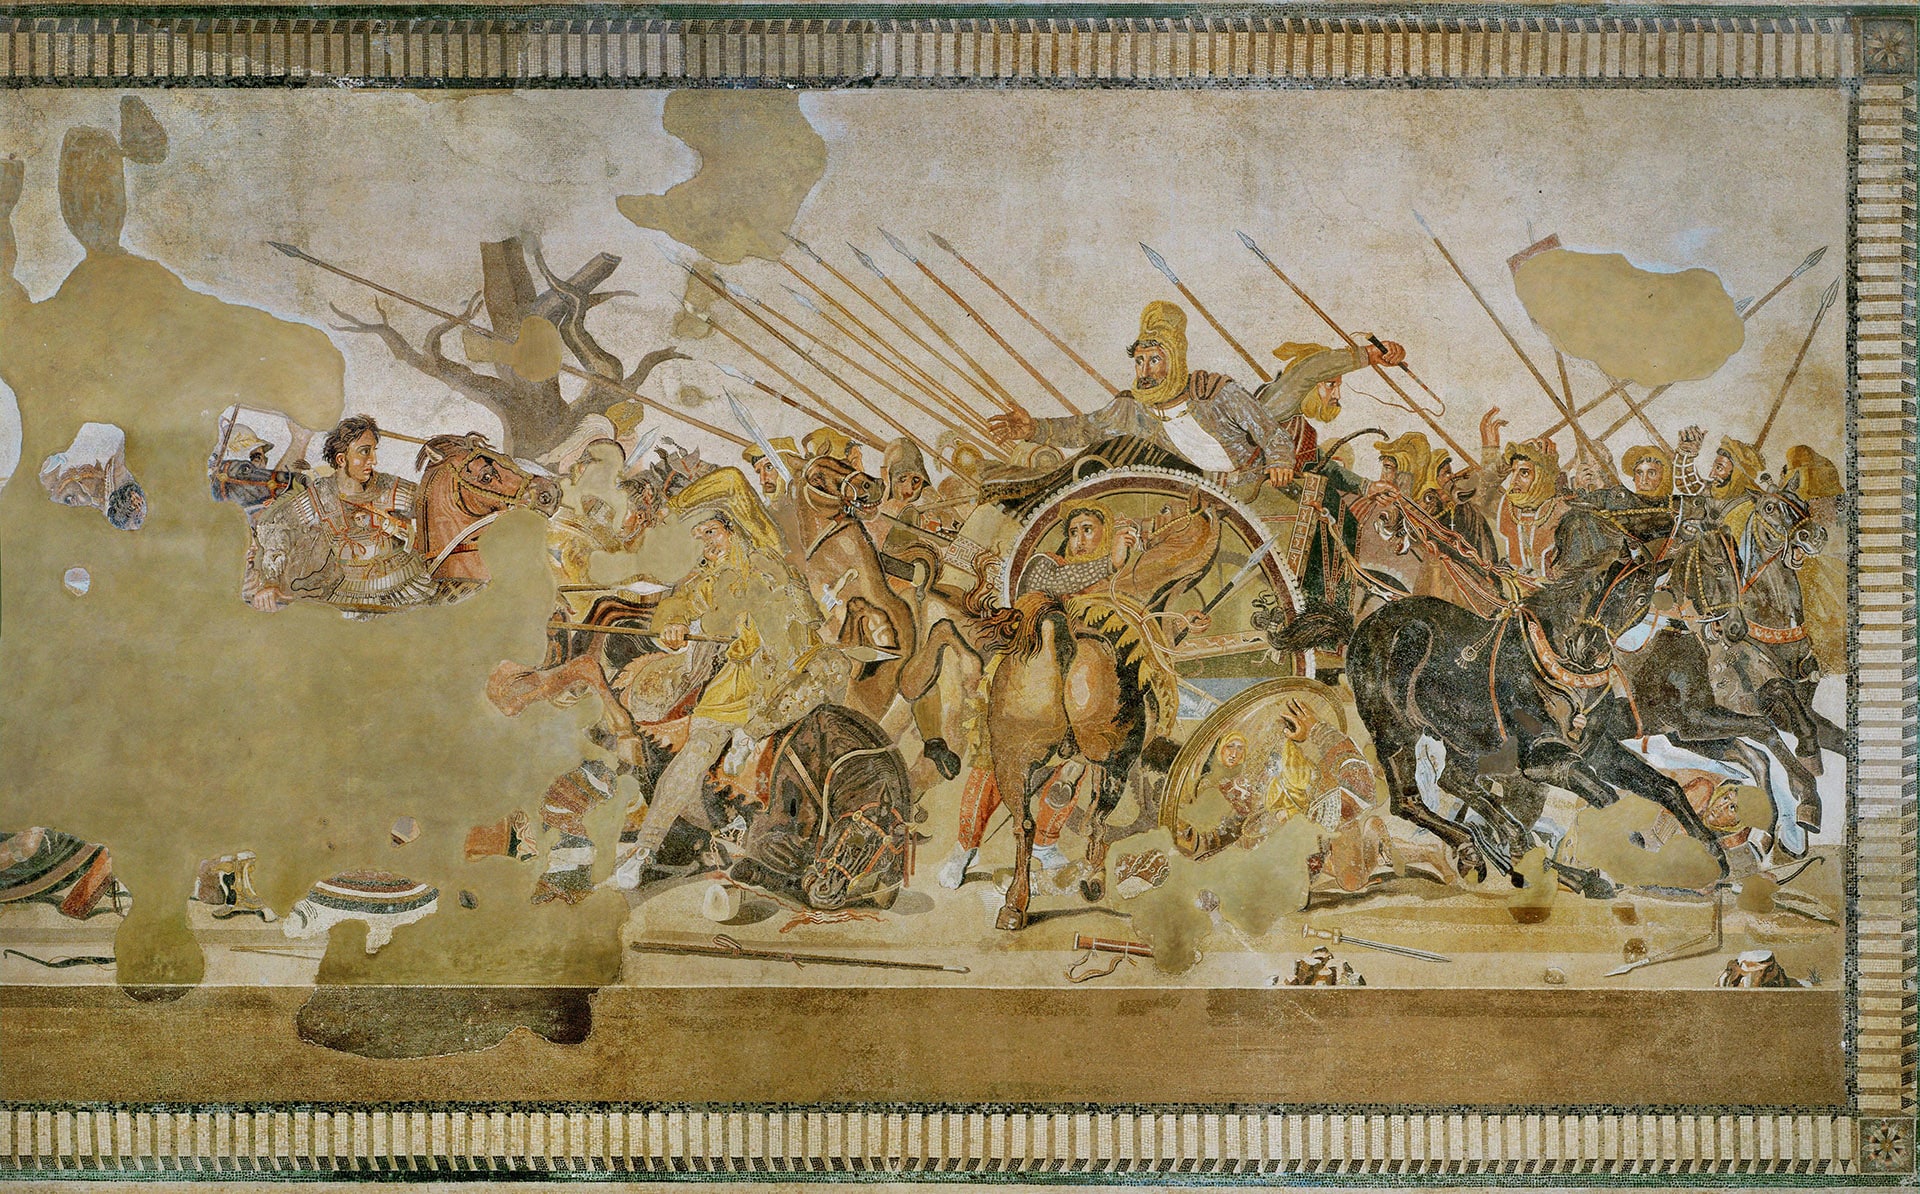 Detalle del Mosaico de Issos (copia romana del siglo I a. C.) que representa a Alejandro Magno luchando con general persa, Darío. La armadura de Alejandro tiene un gorgoneion como amuleto protector.